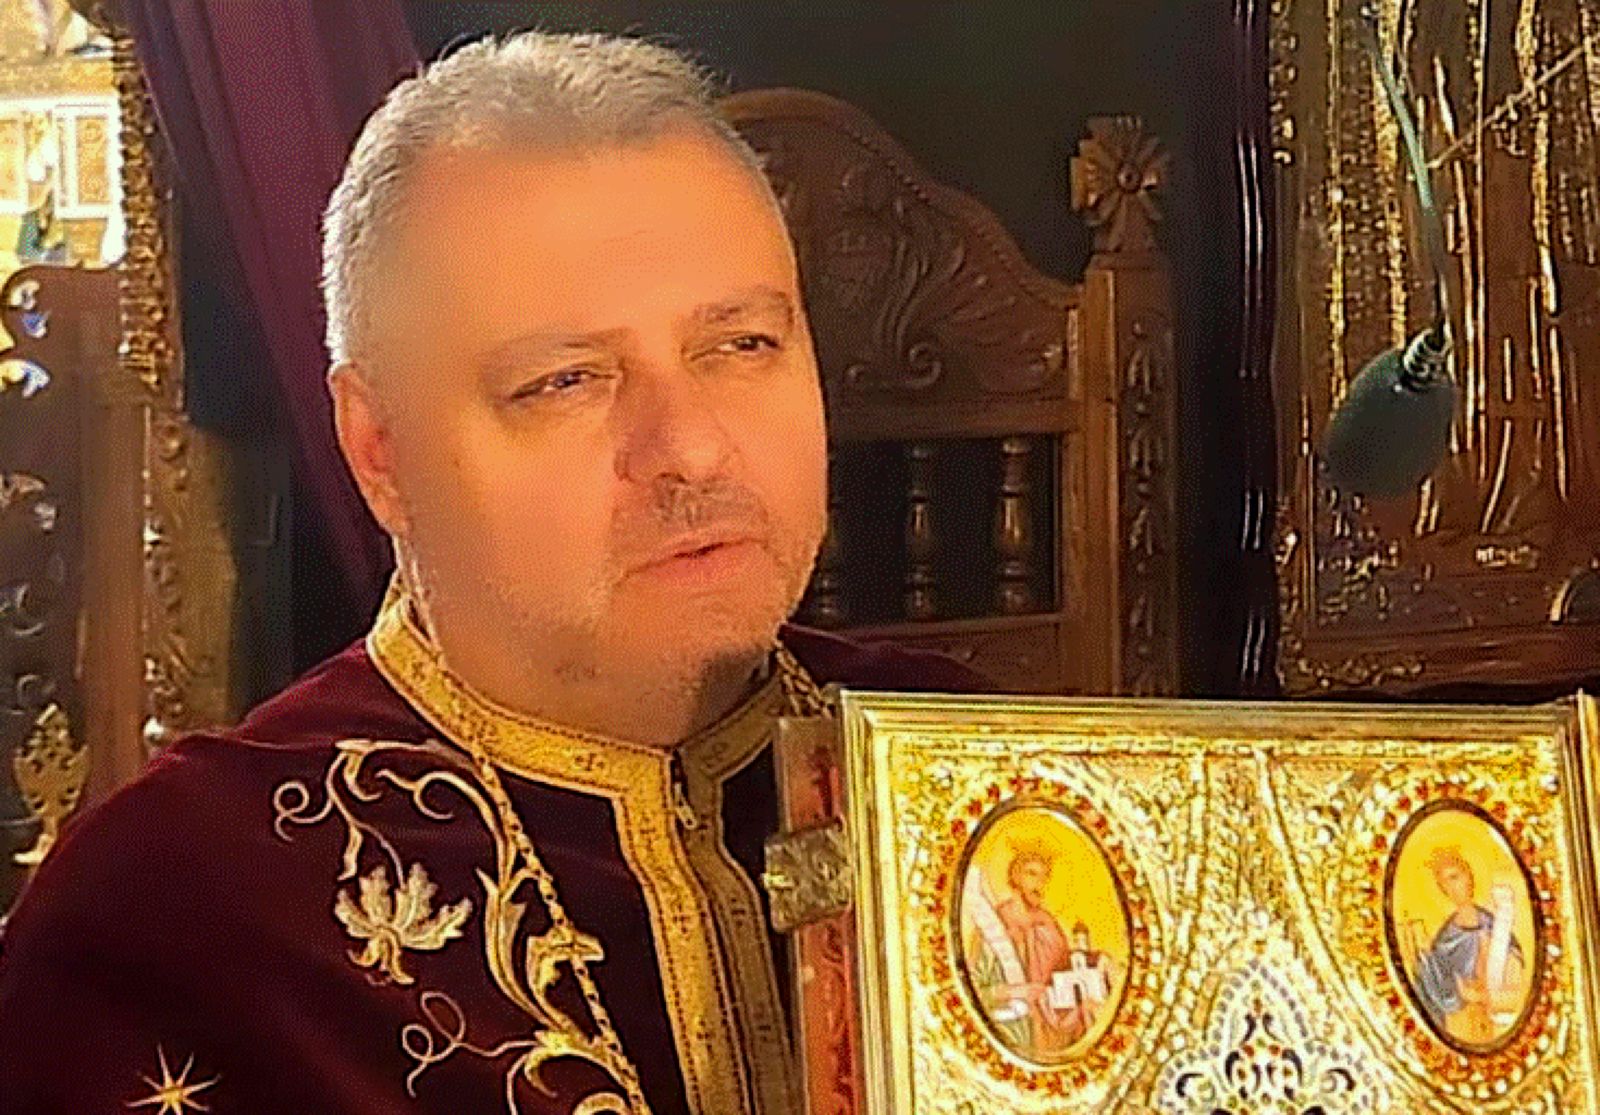 Exclusivitate. Preotul Emil Cărămizaru: „Mioara Roman a avut un duh de smerenie, discreție și bunătate”